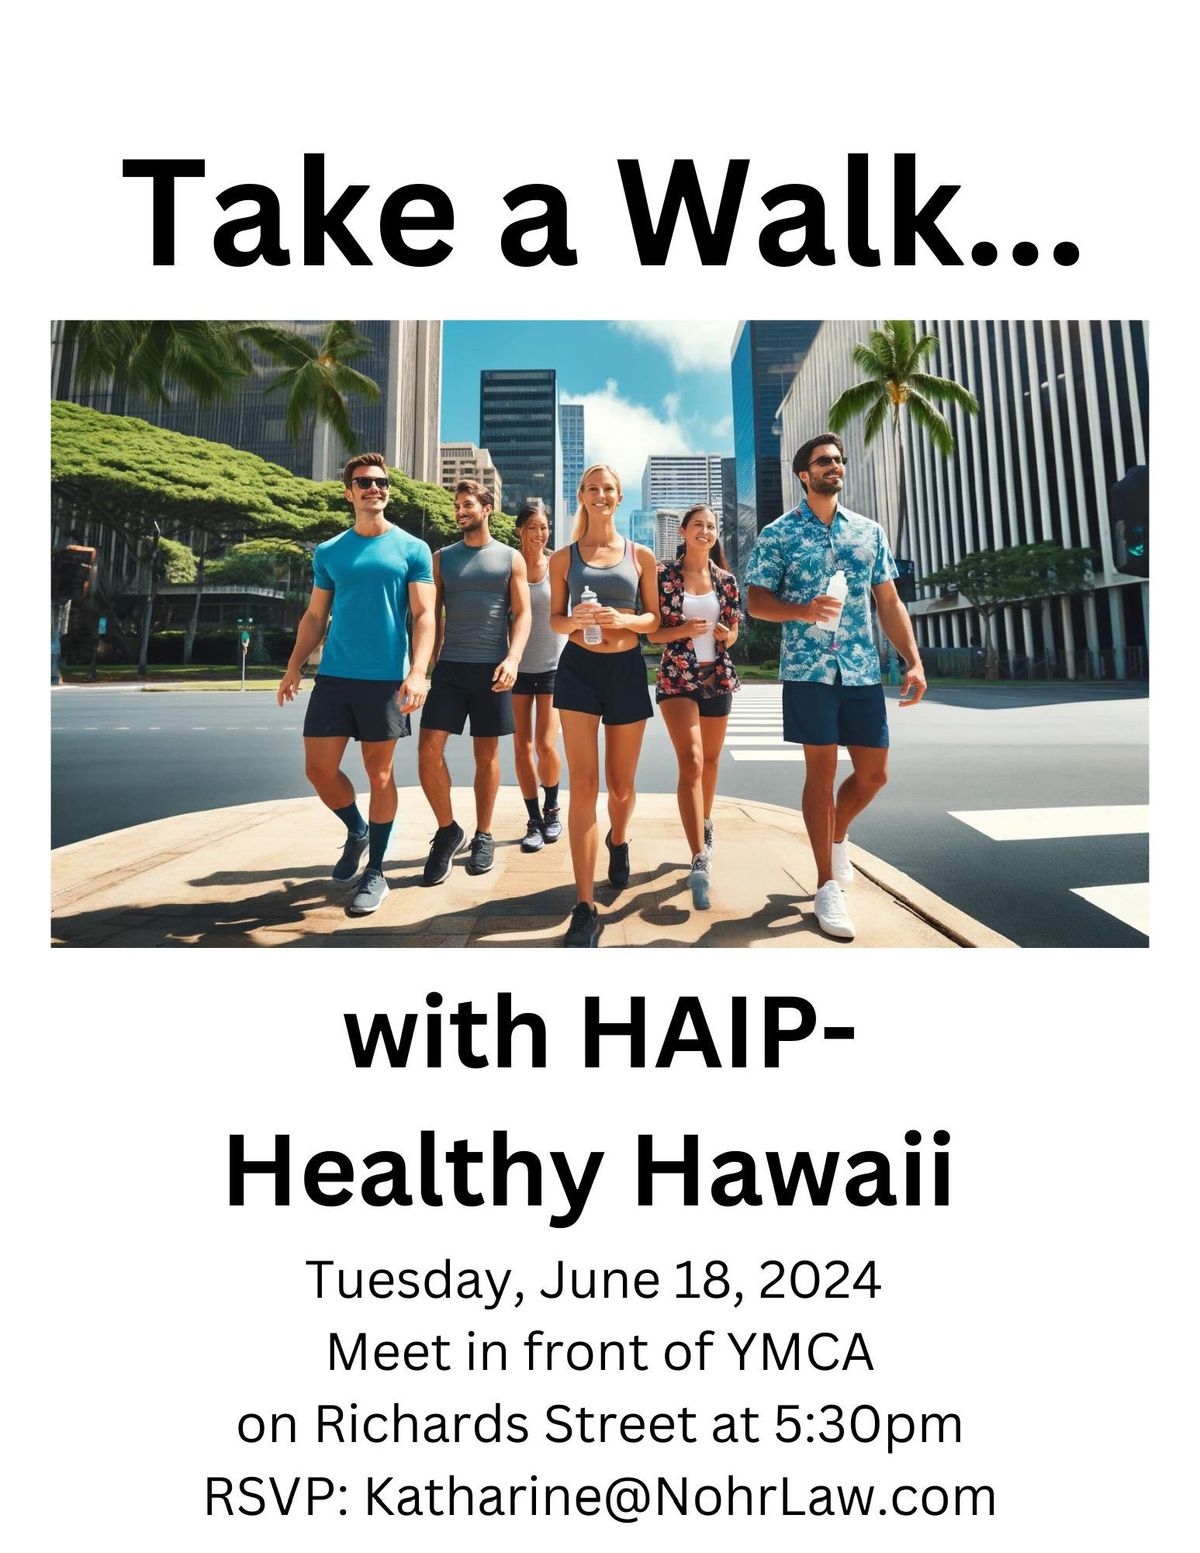 HAIP Healthy Hawaii Walk